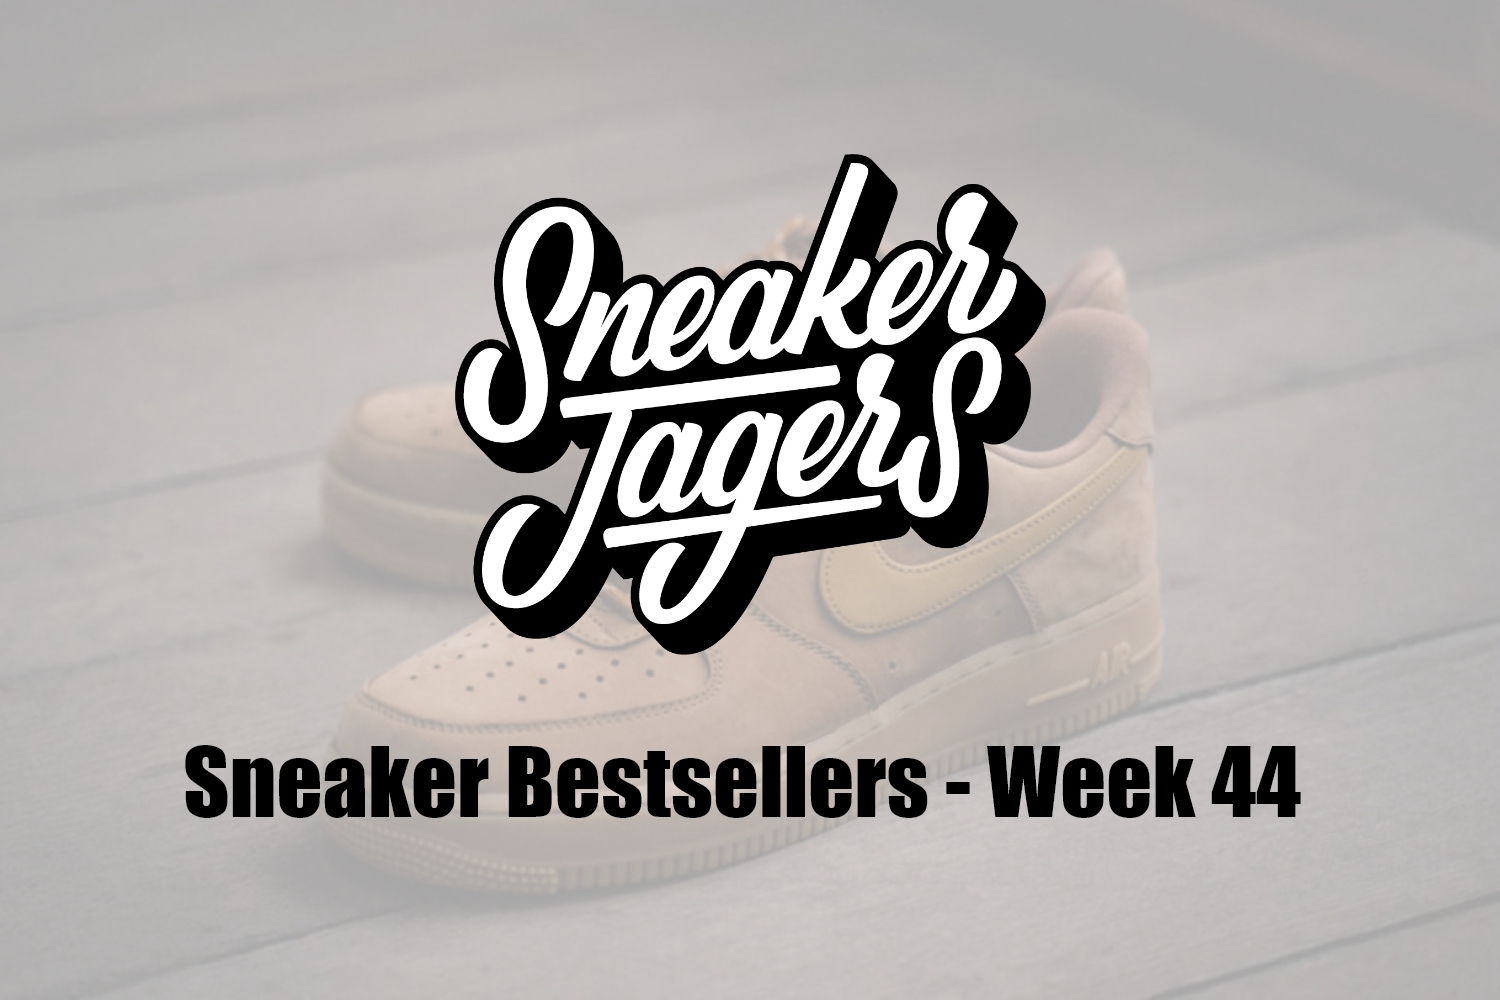 Our Sneaker Bestsellers - Week 44 - What's on Trend 📈